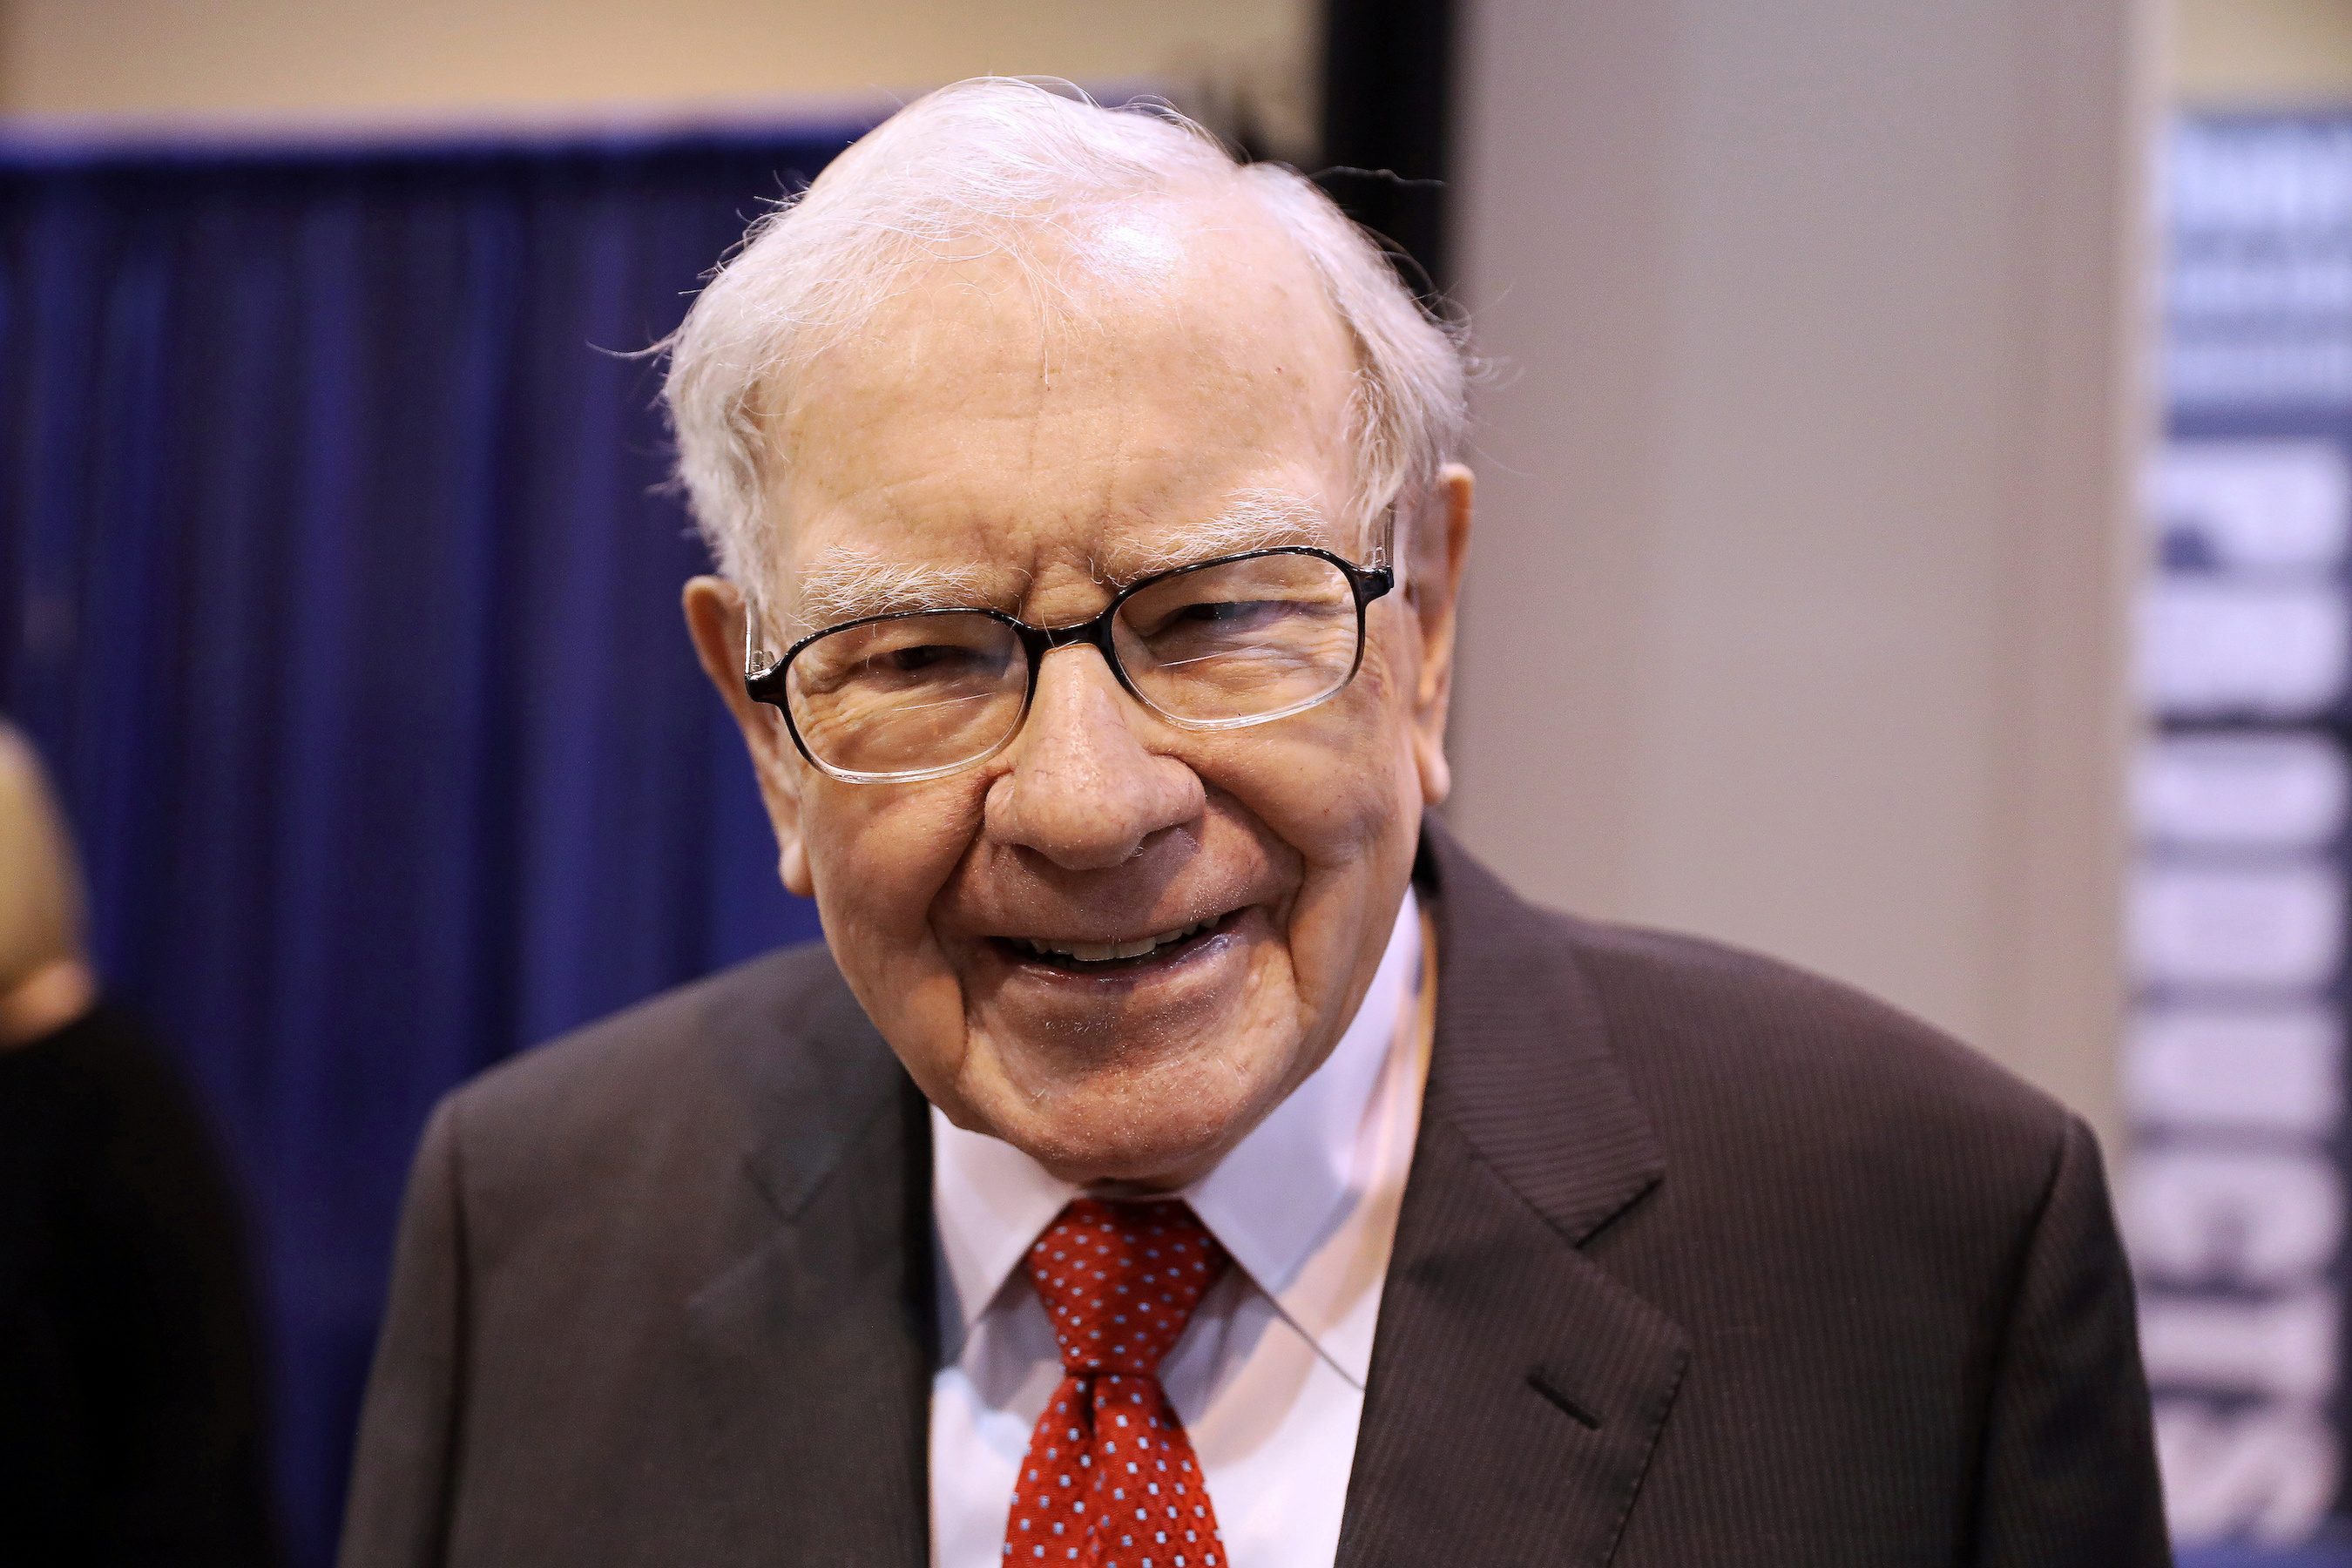 Warren Buffett’s net worth reaches $100 billion